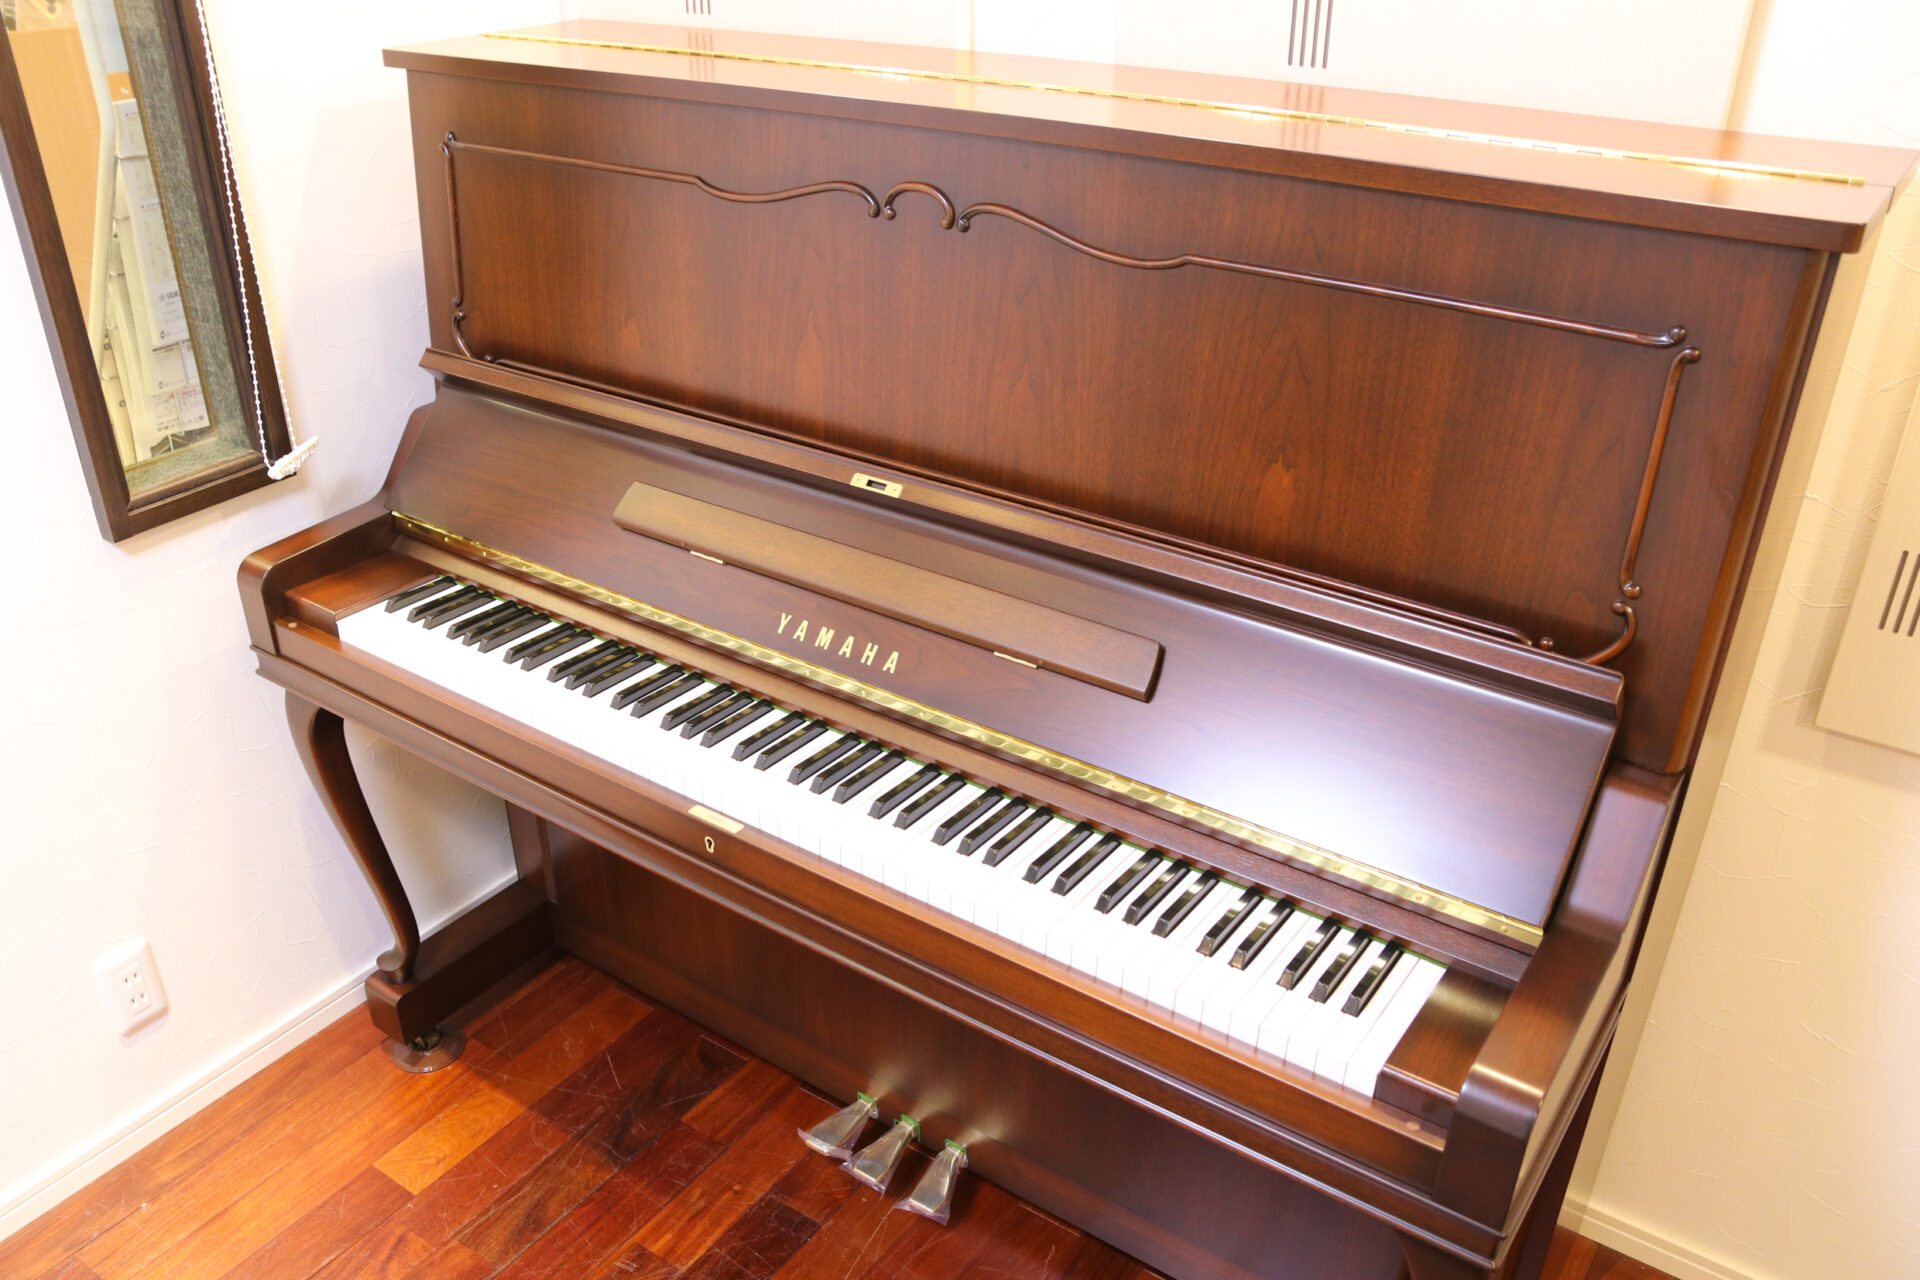 ヤマハ WX106W| 中古ピアノ 自社工房リフレッシュ済3年保証付 | 新響 